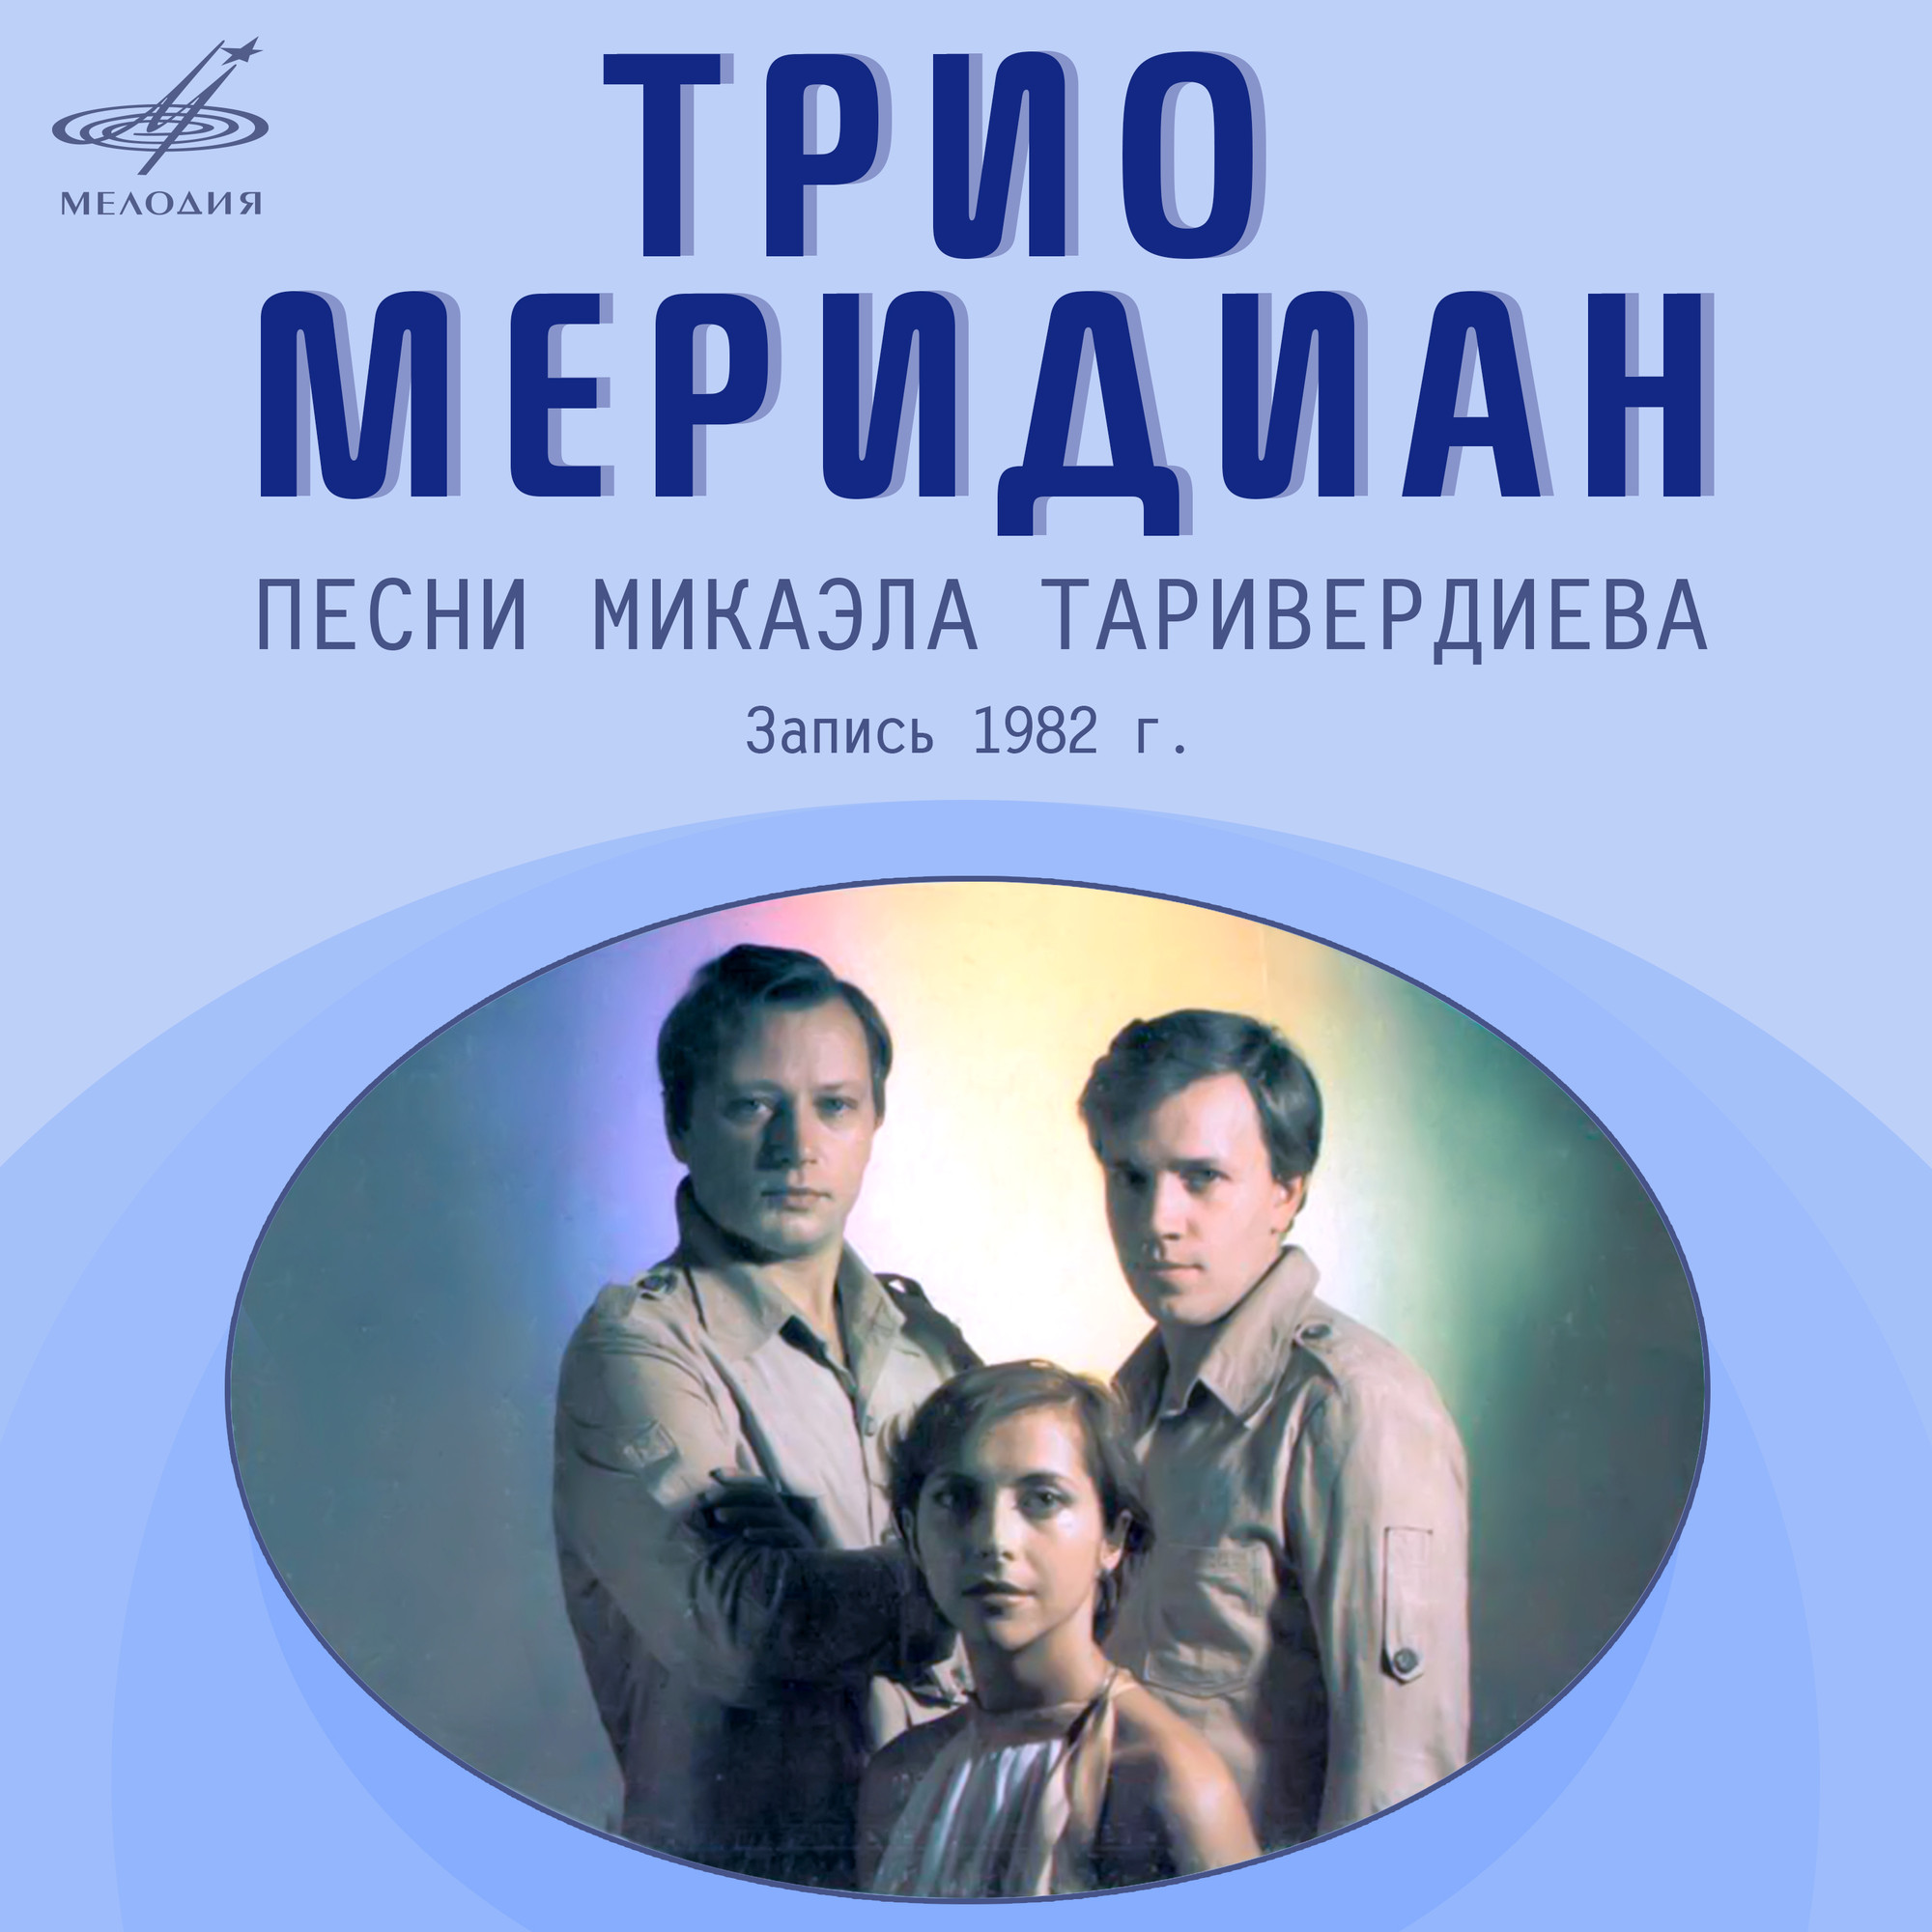 Трио "МЕРИДИАН". Песни Микаэла Таривердиева